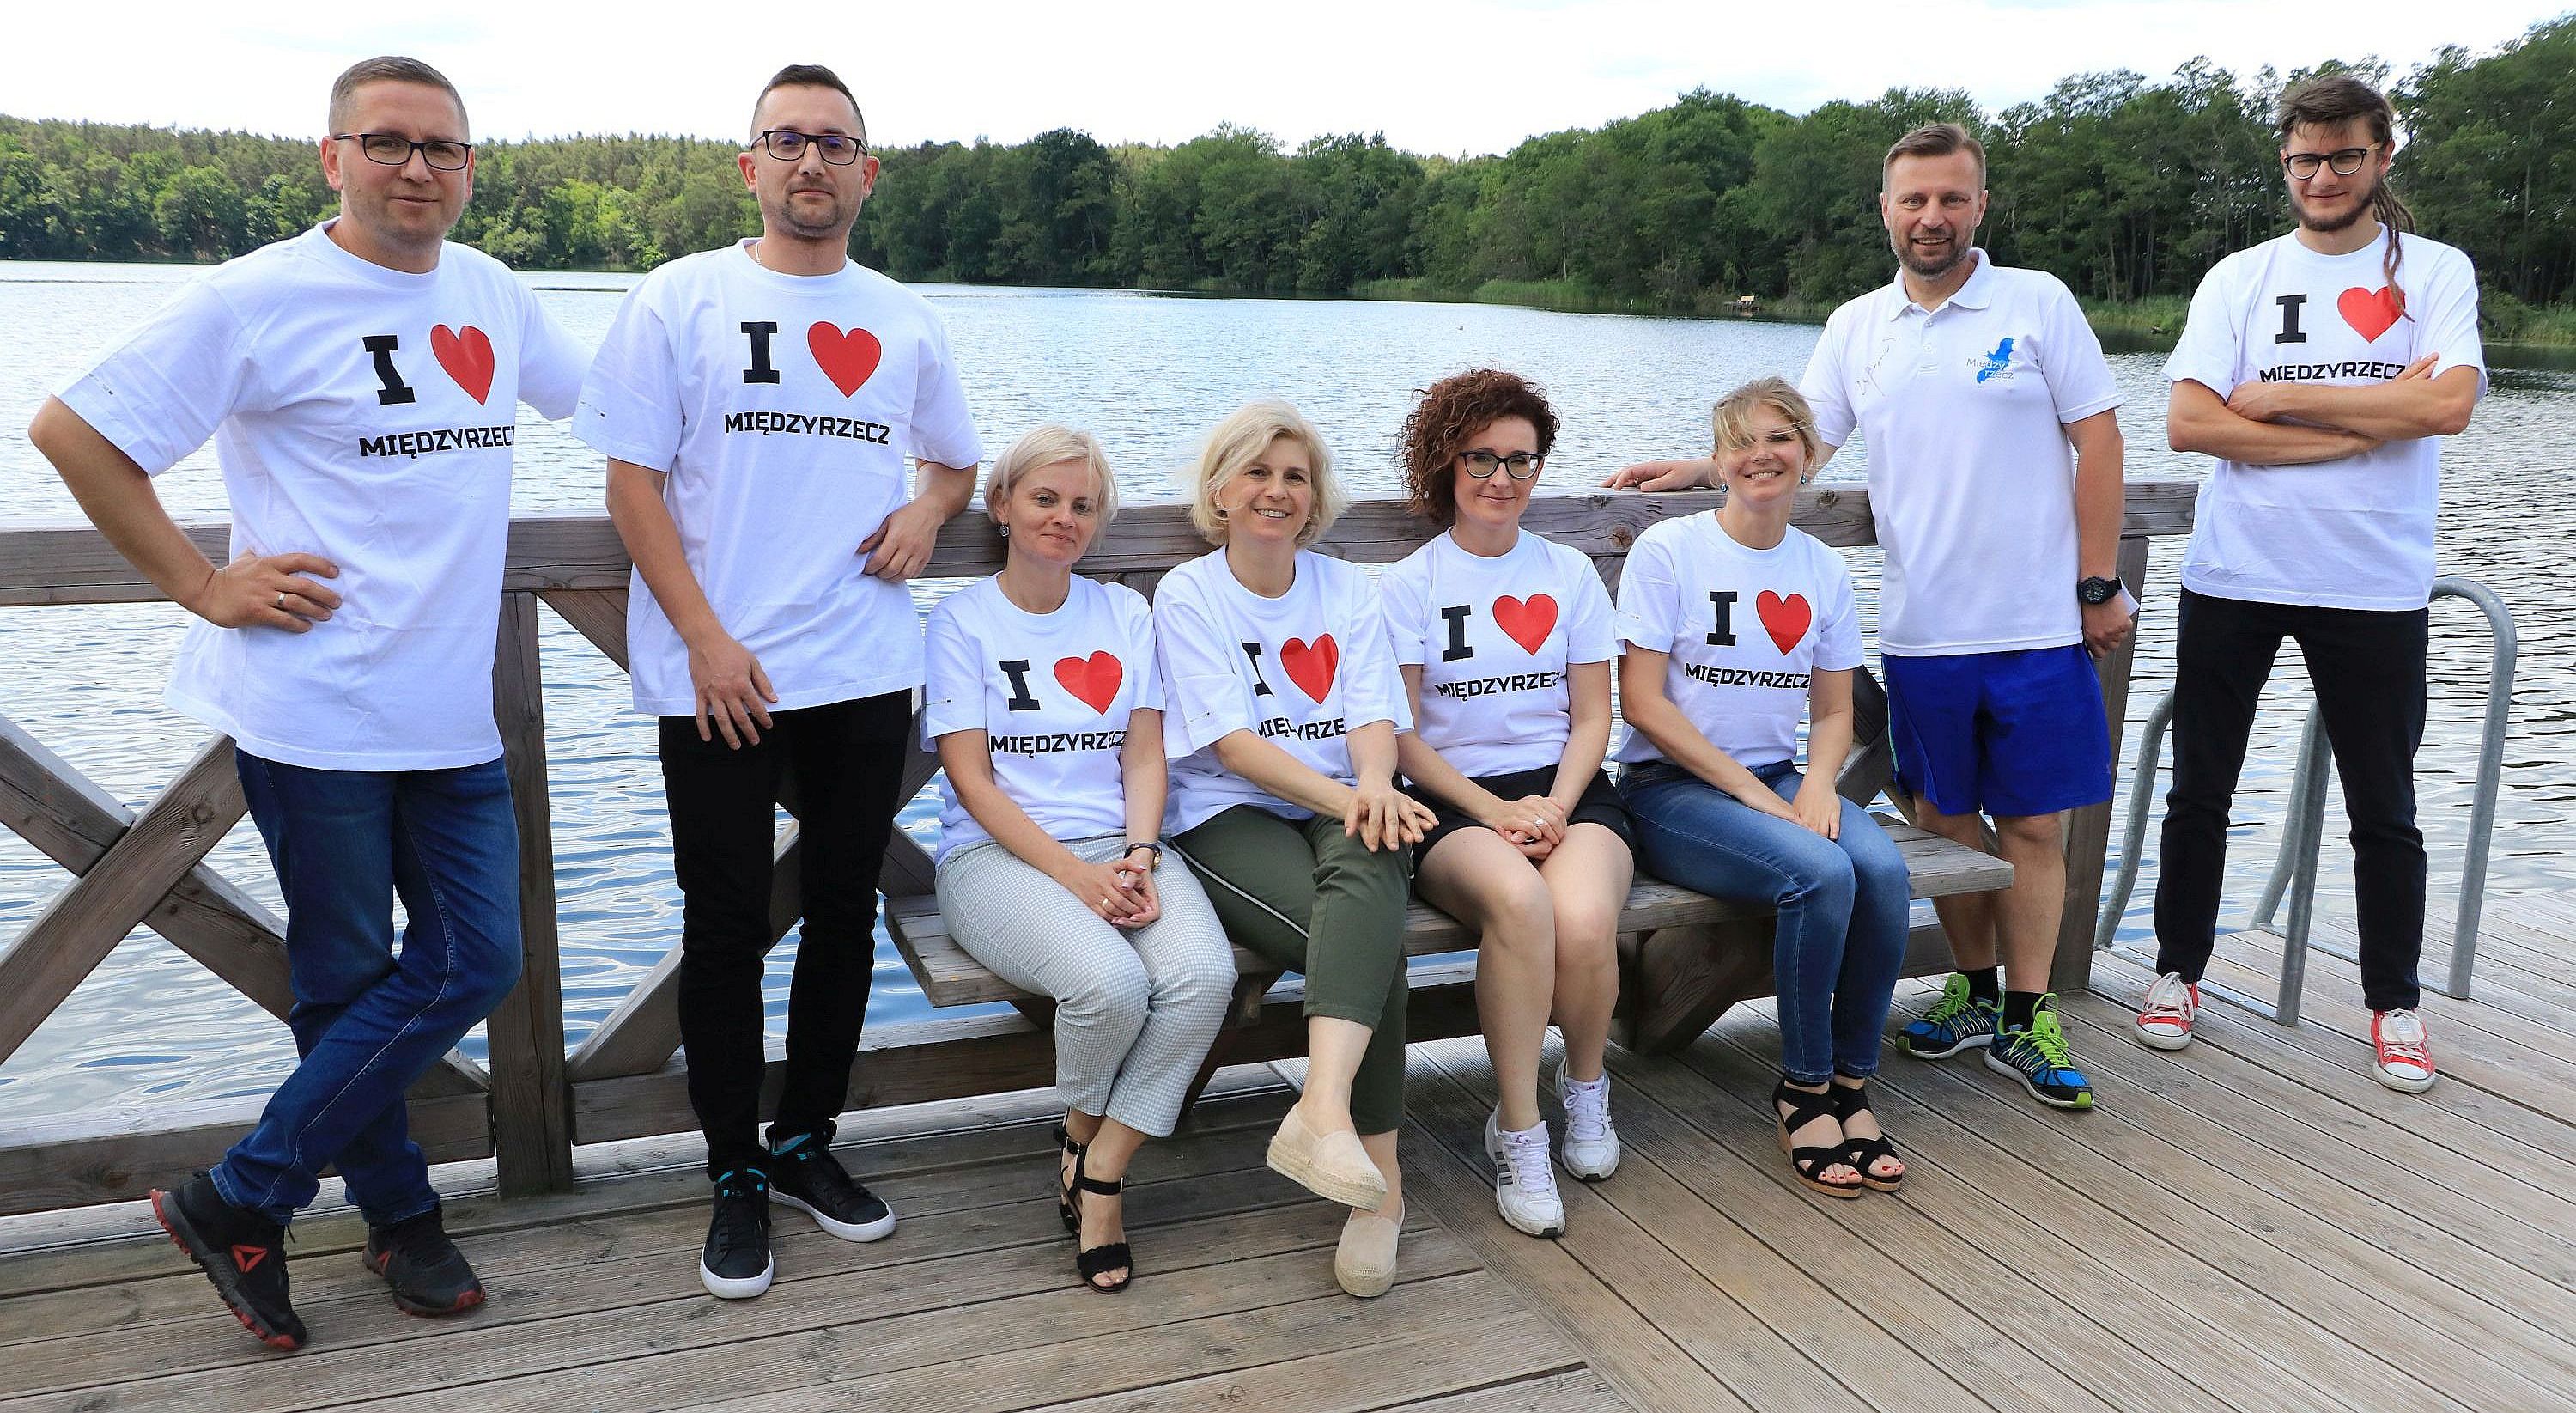 Ilustracja do informacji: Burmistrz Międzyrzecza i pracownicy Urzędu Miejskiego wzięli udział w charytatywnej akcji